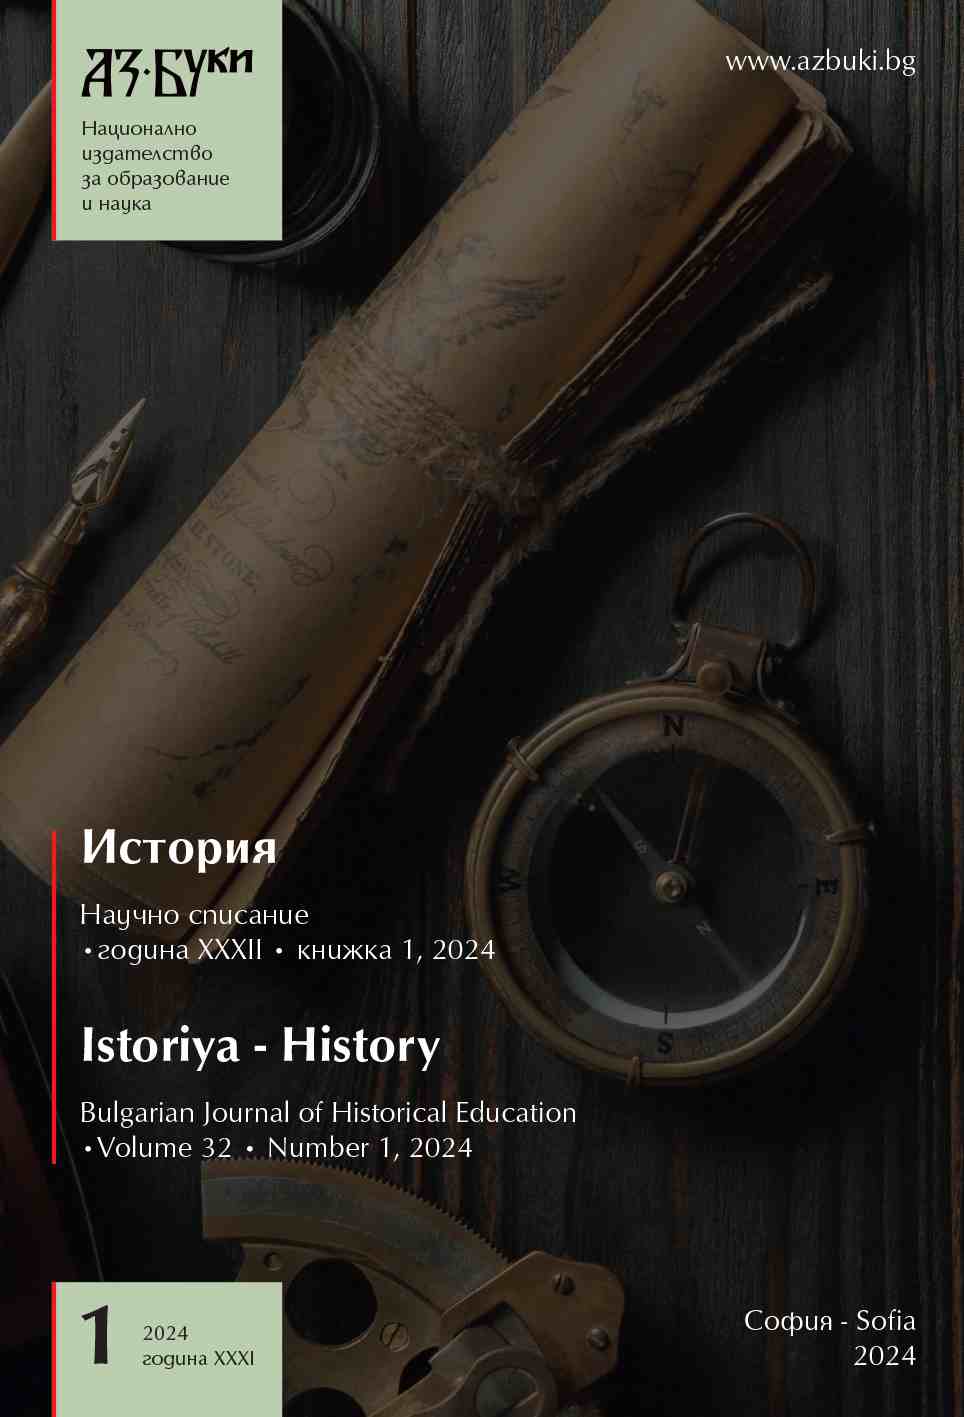 Музеи, културен туризъм и културно наследство в България от средата до края на ХХ век. Основни моменти от историческото развитие и проблеми